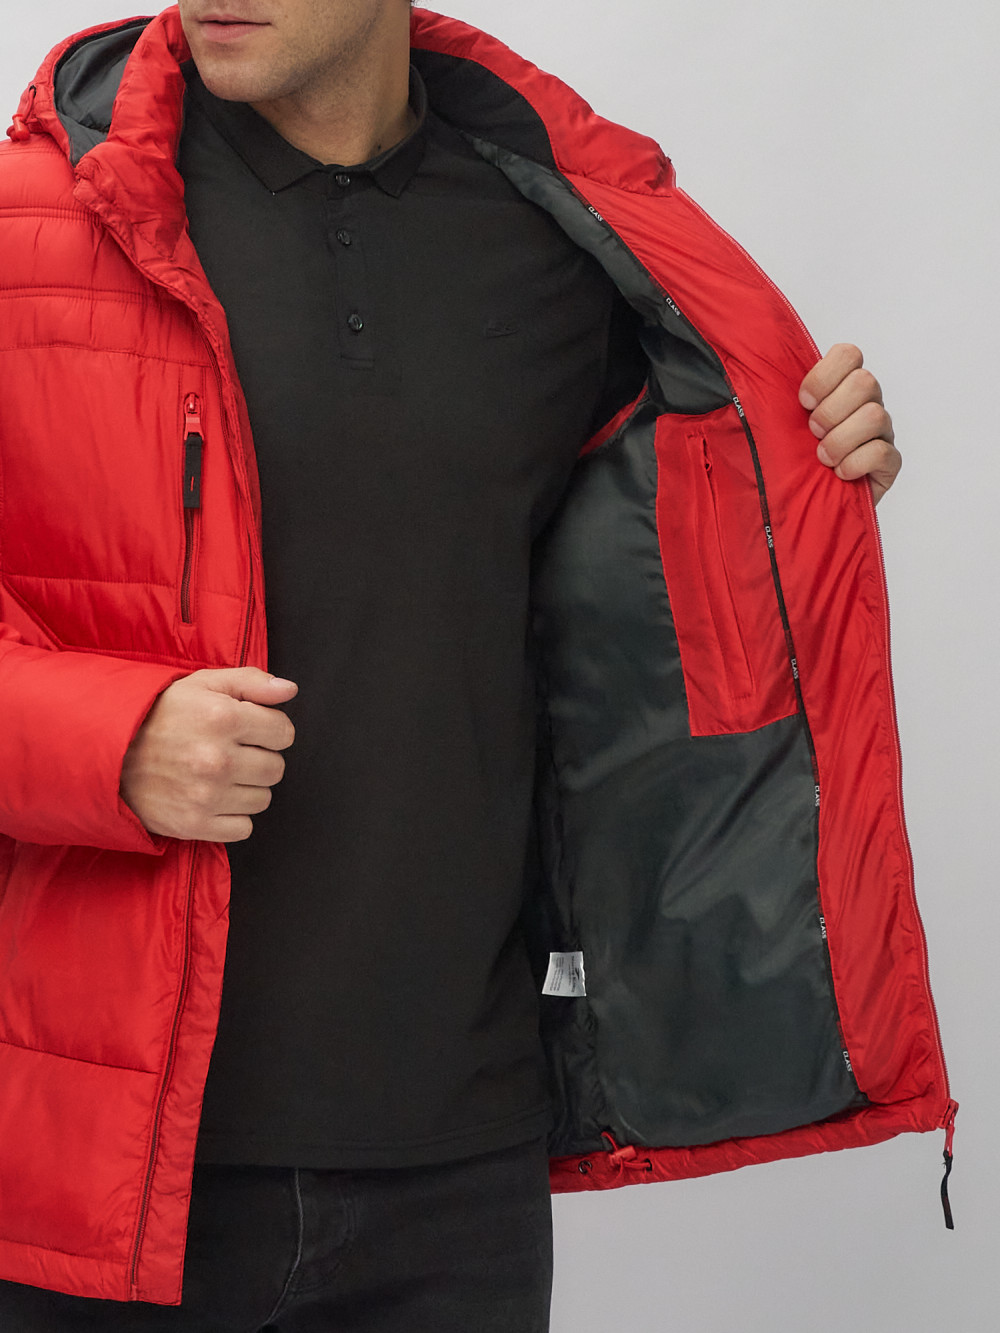 Купить куртку мужскую спортивную весеннюю оптом от производителя недорого в Москве 62190Kr 1